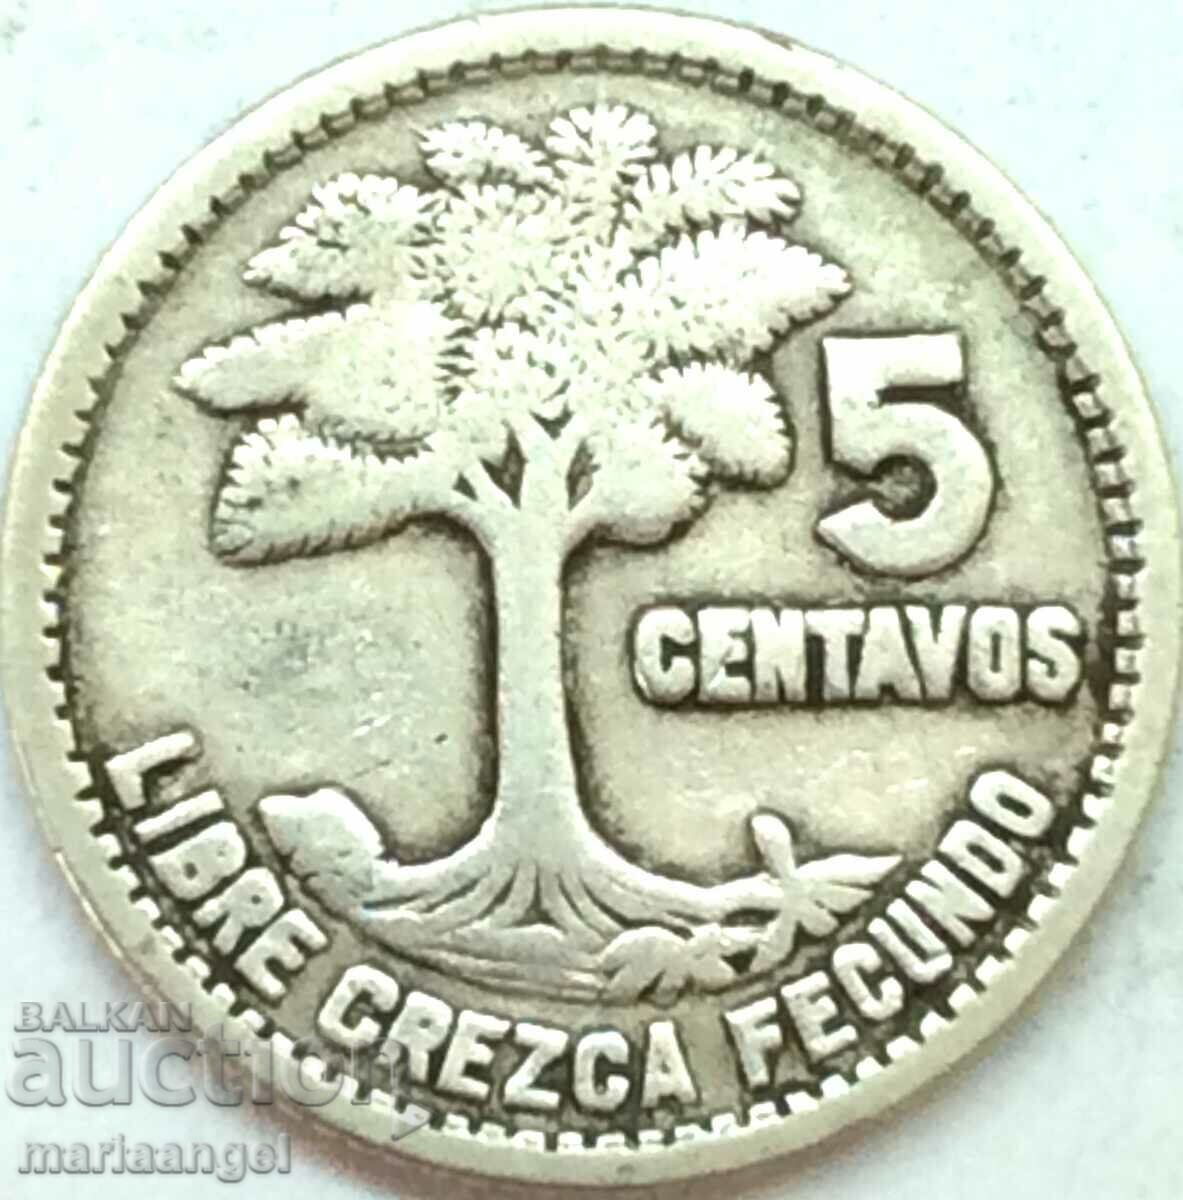 Guatemala 1955 5 cent centavos silver - quite rare